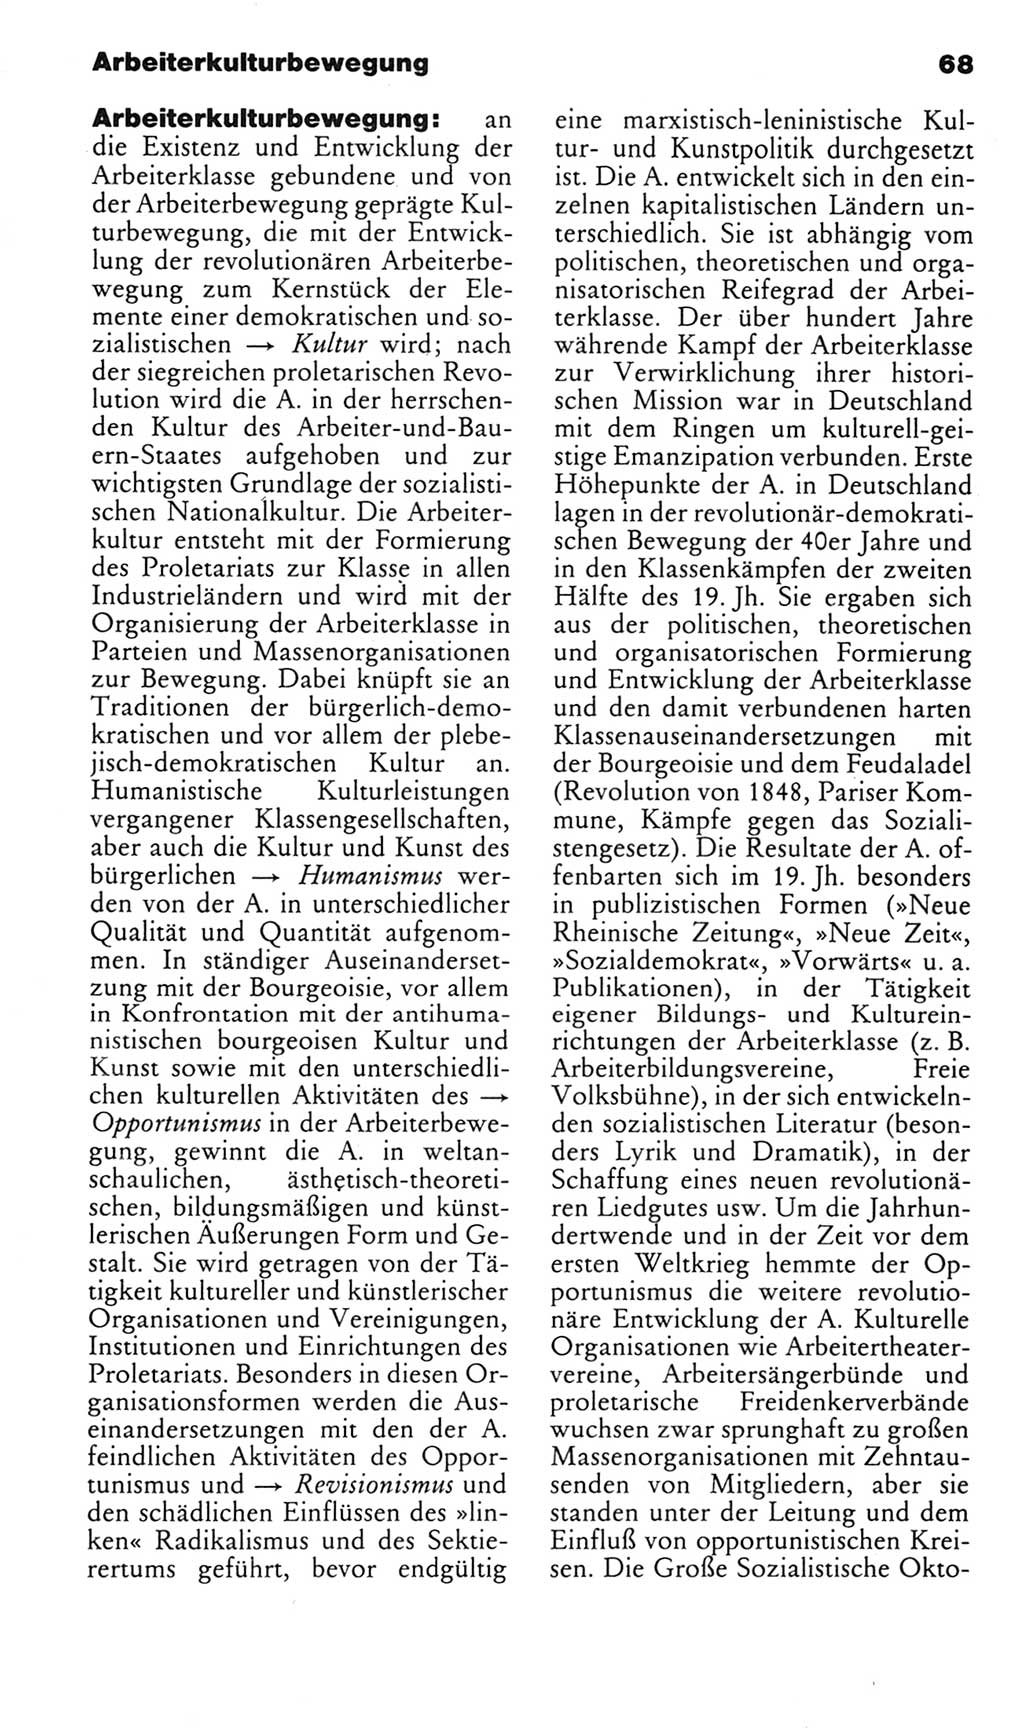 Kleines politisches Wörterbuch [Deutsche Demokratische Republik (DDR)] 1985, Seite 68 (Kl. pol. Wb. DDR 1985, S. 68)